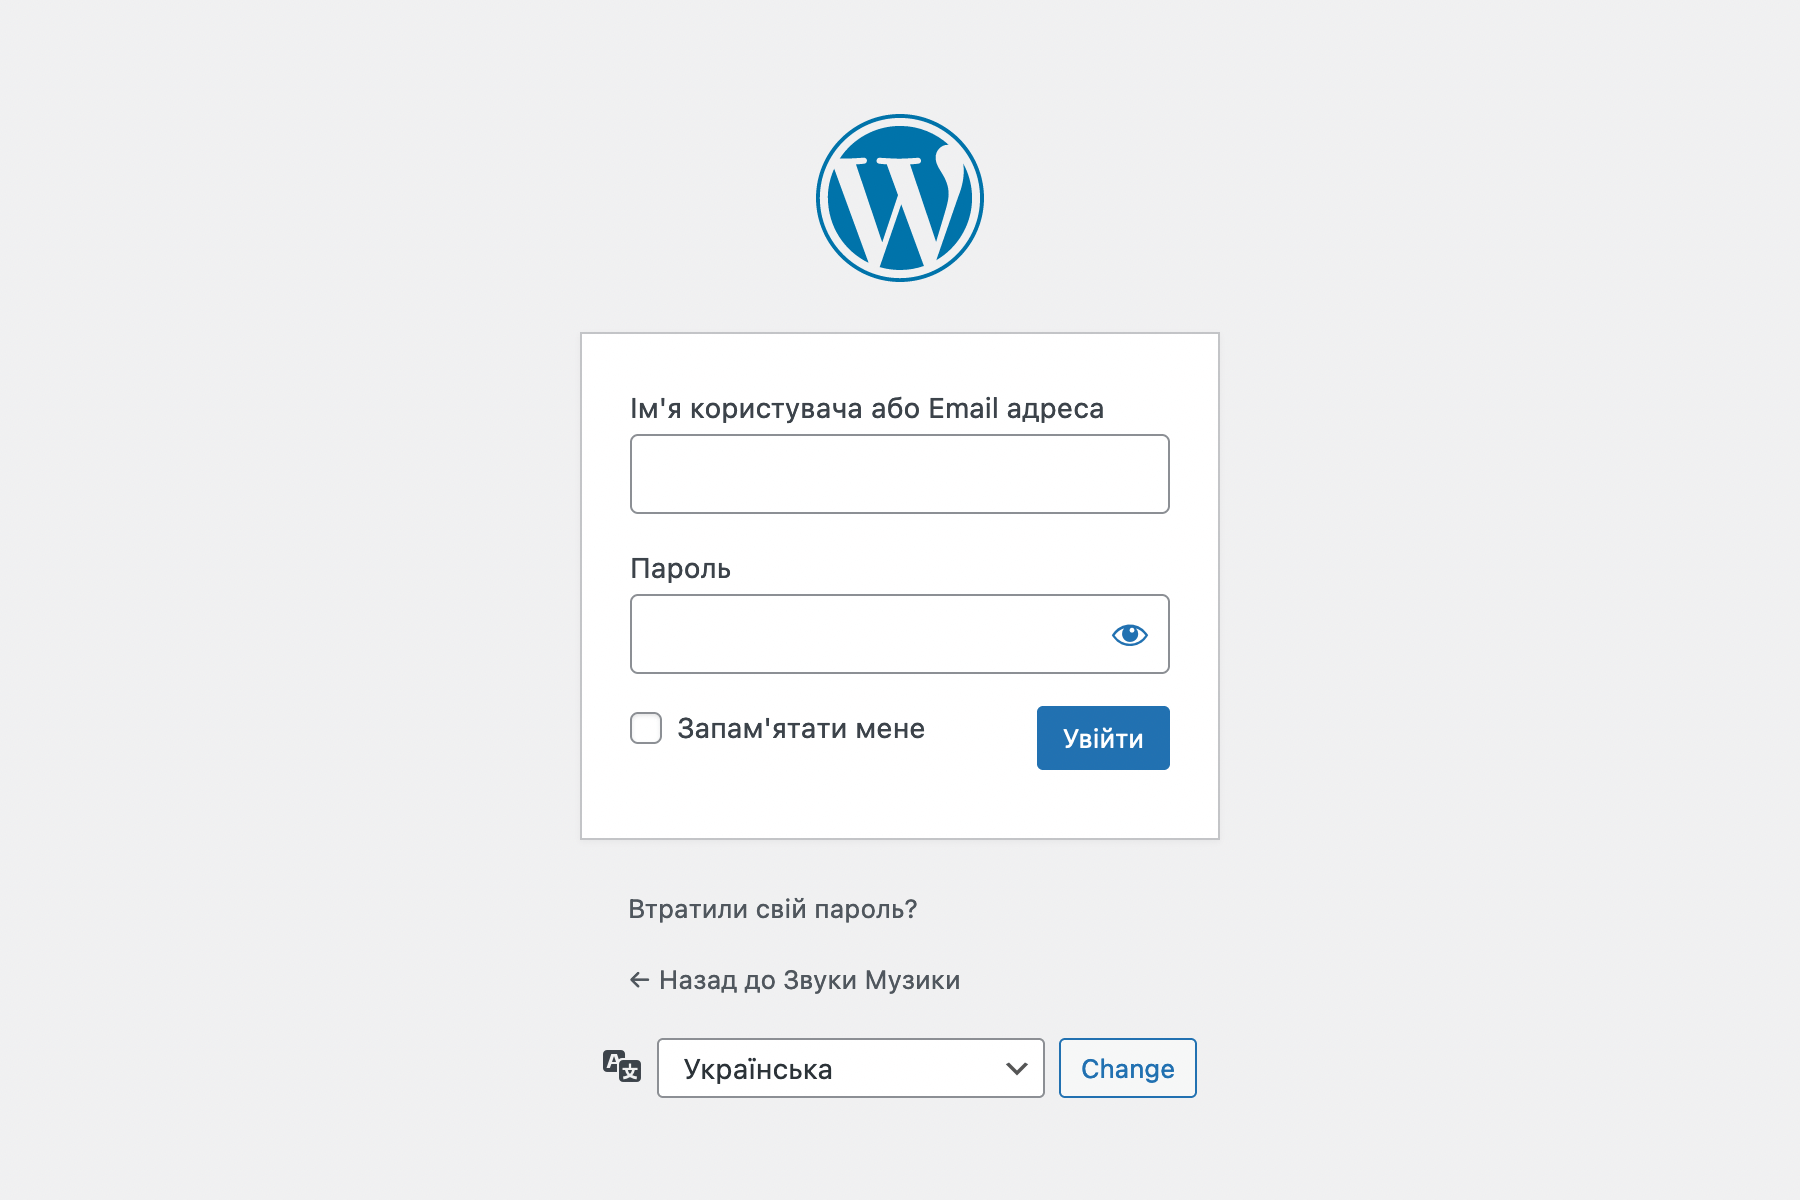 Сторінка входу в консоль WordPress, коли в опції «Членство» не стоїть галочка